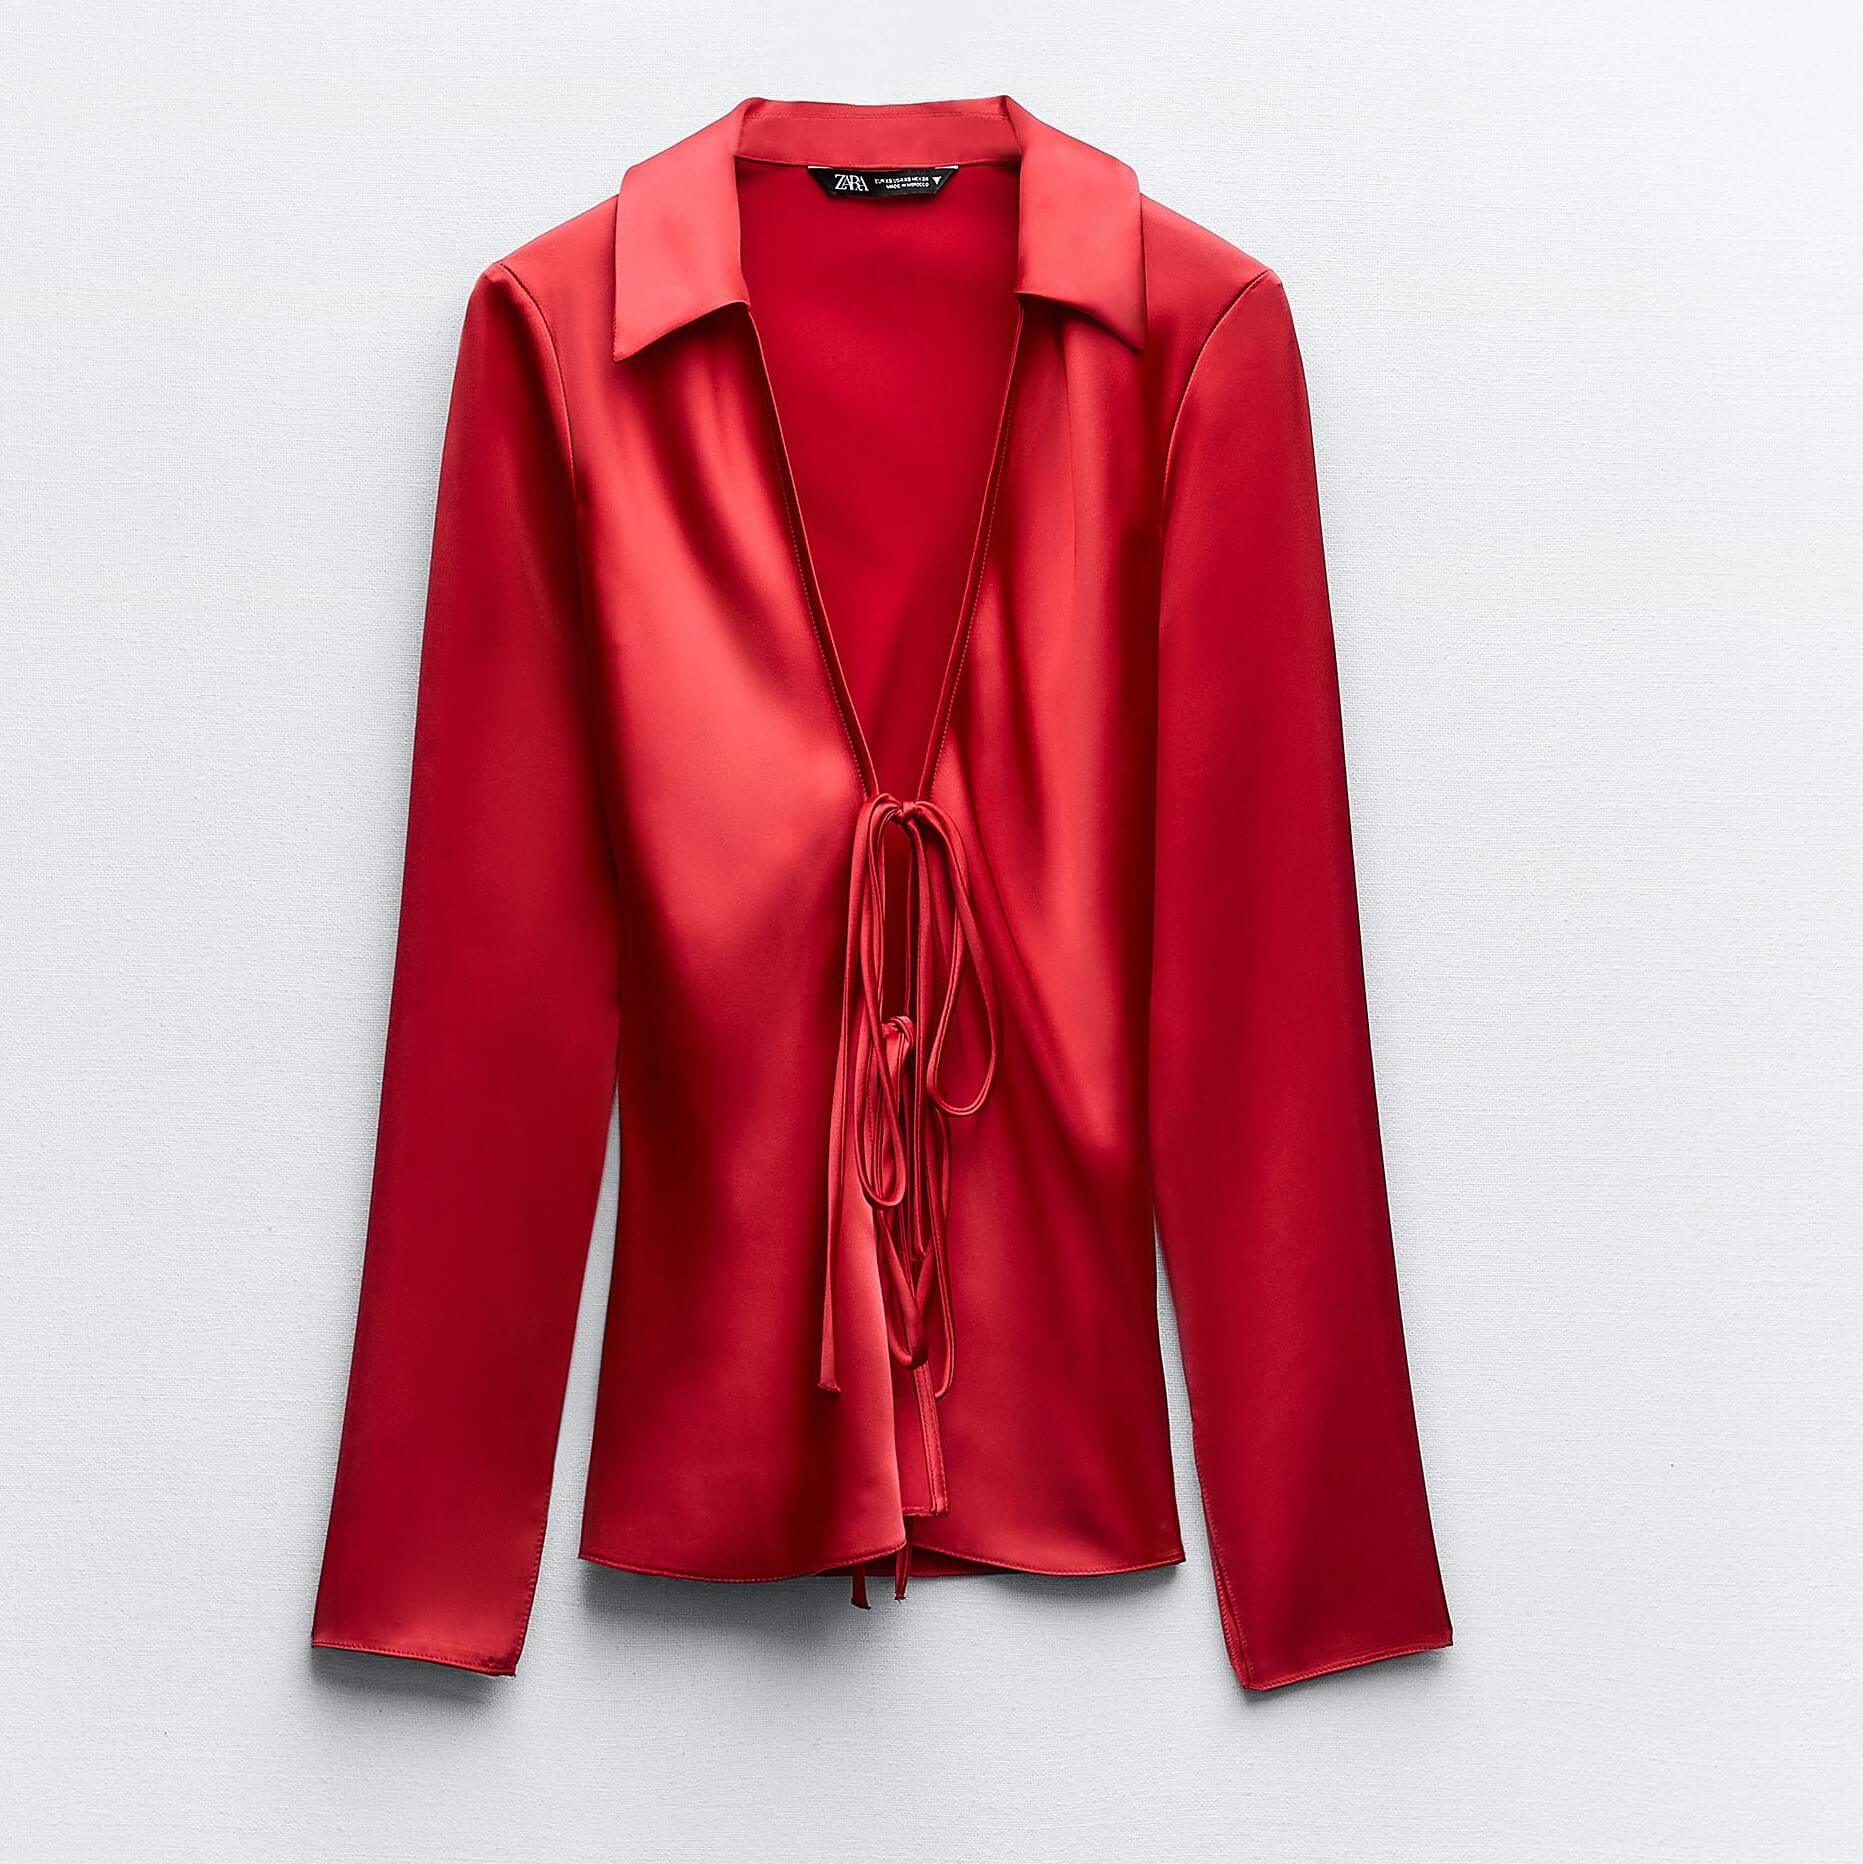 Рубашка Zara Satin With Bows, красный рубашка zara tailored satin with drawstrings бежевый